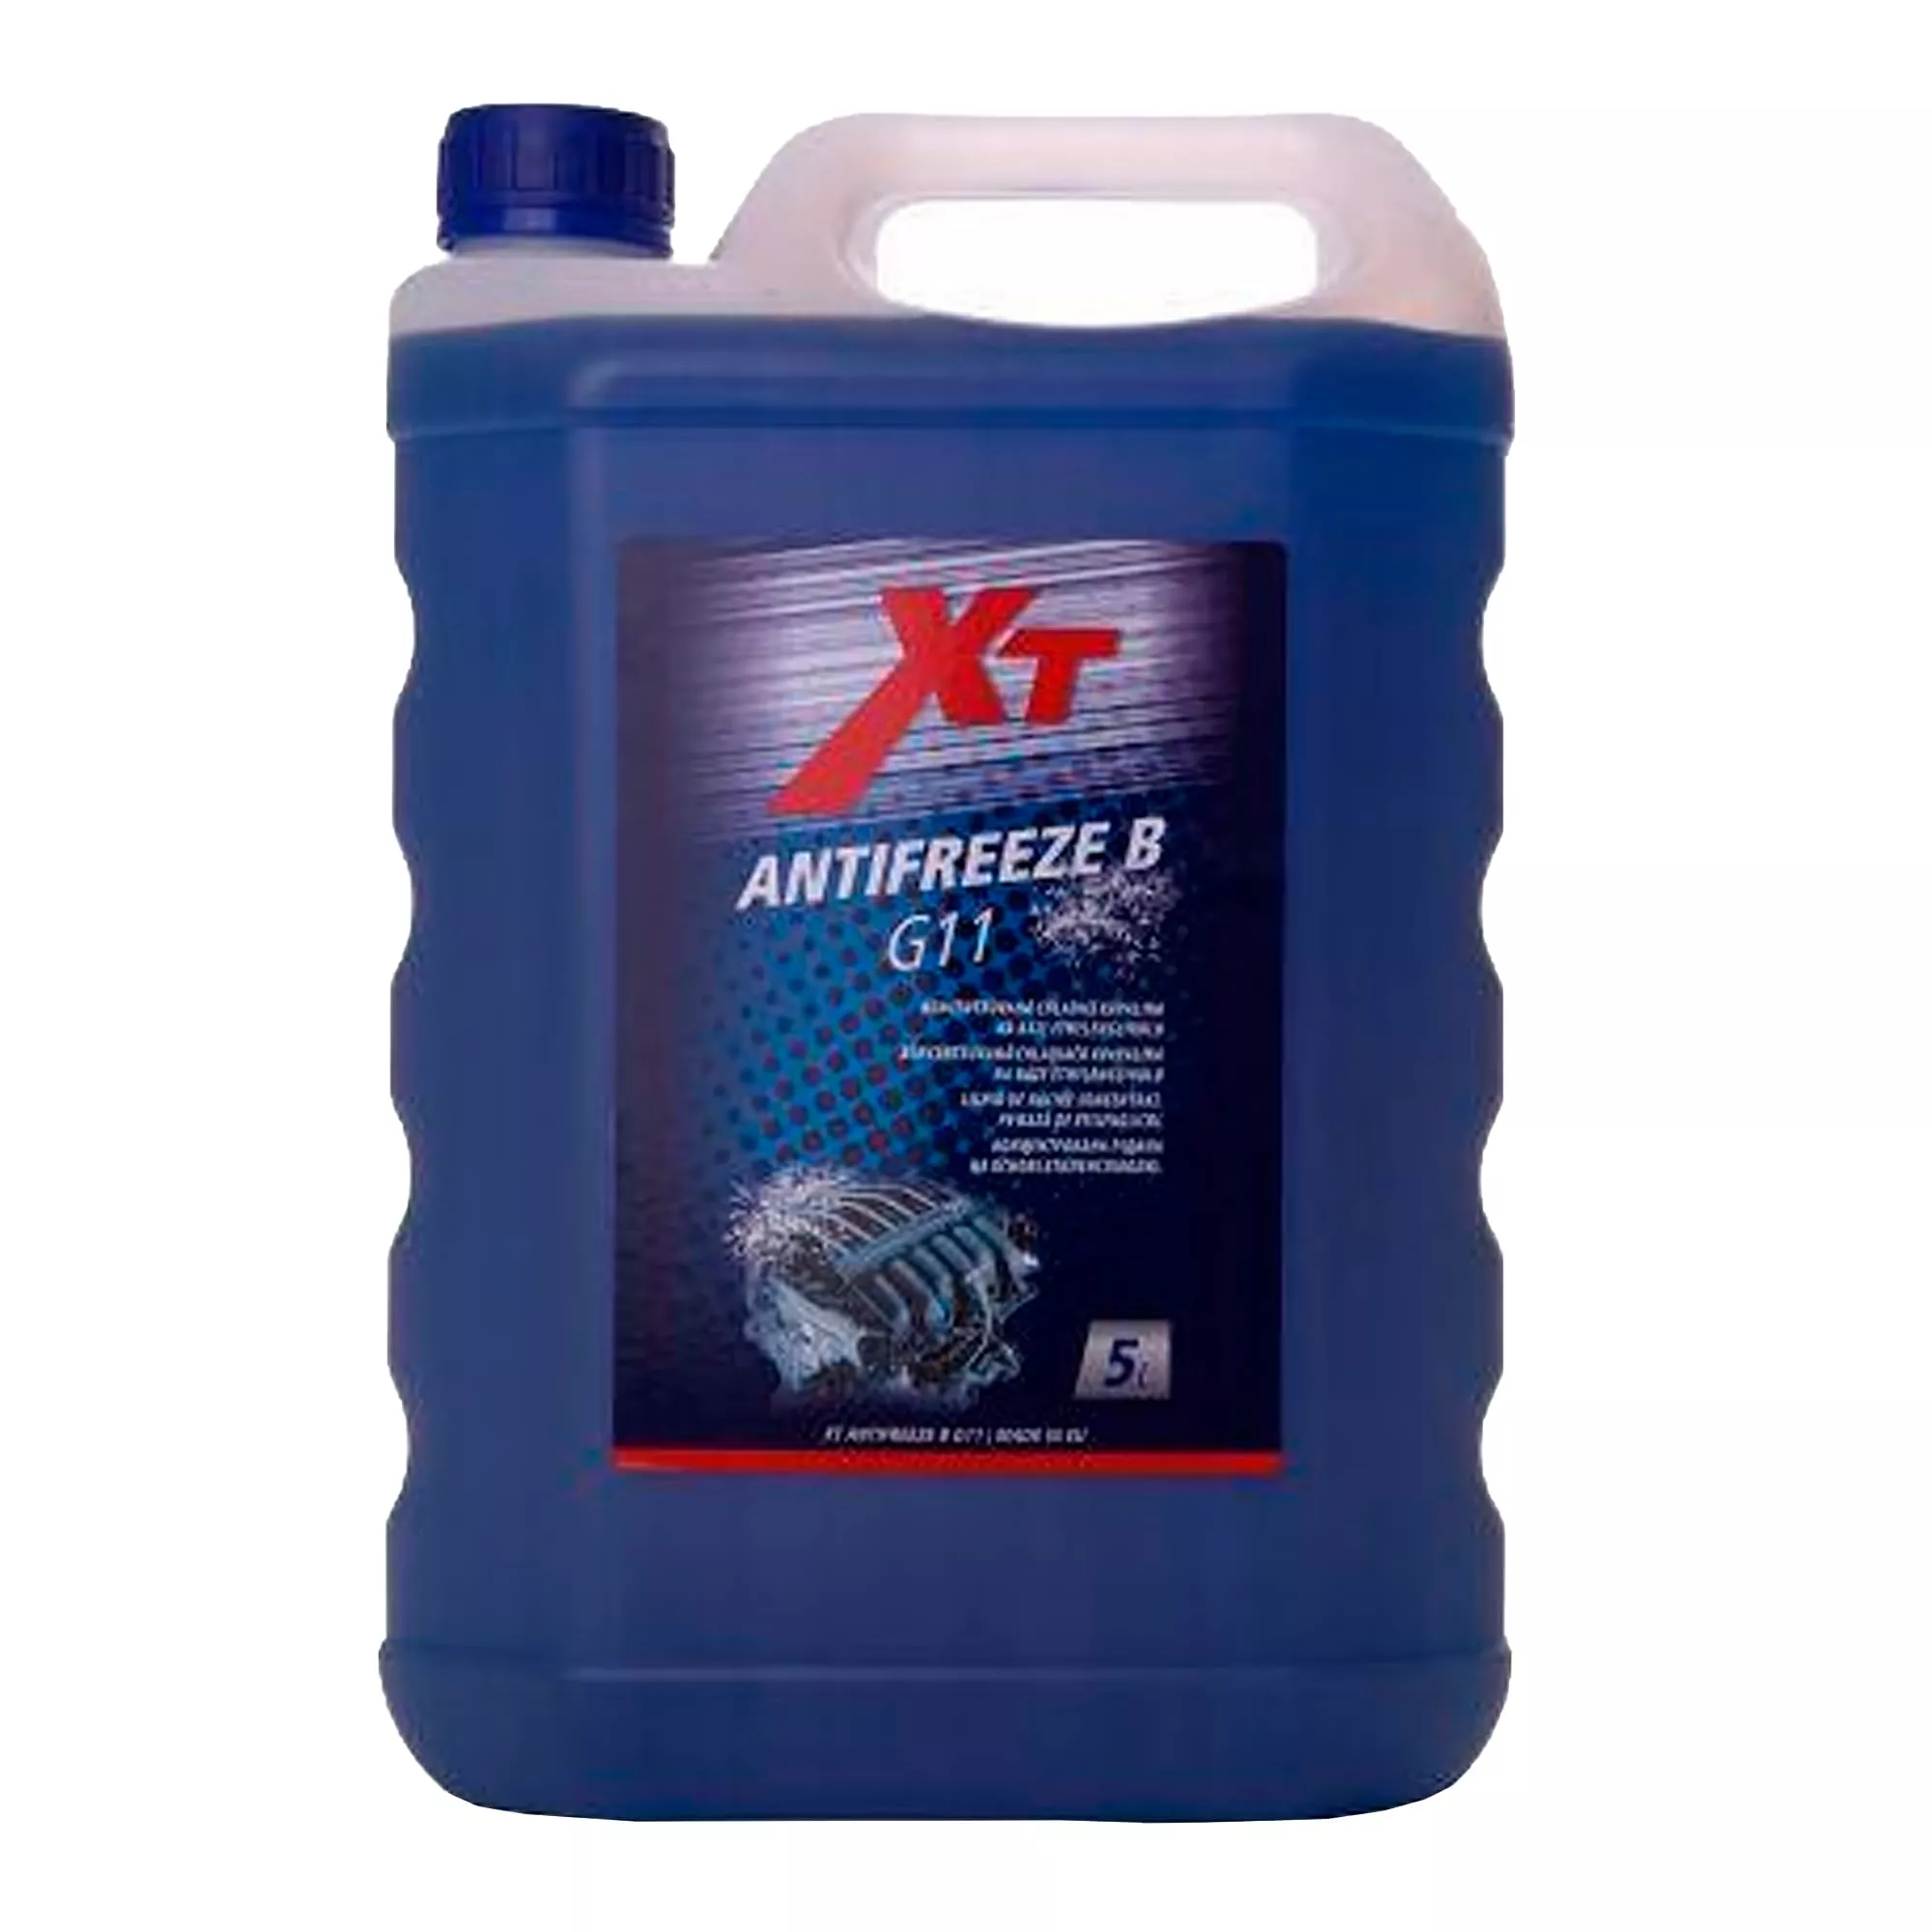 Антифриз XT G11 -38°C синий 5л (ANTIFREEZE B 5L)